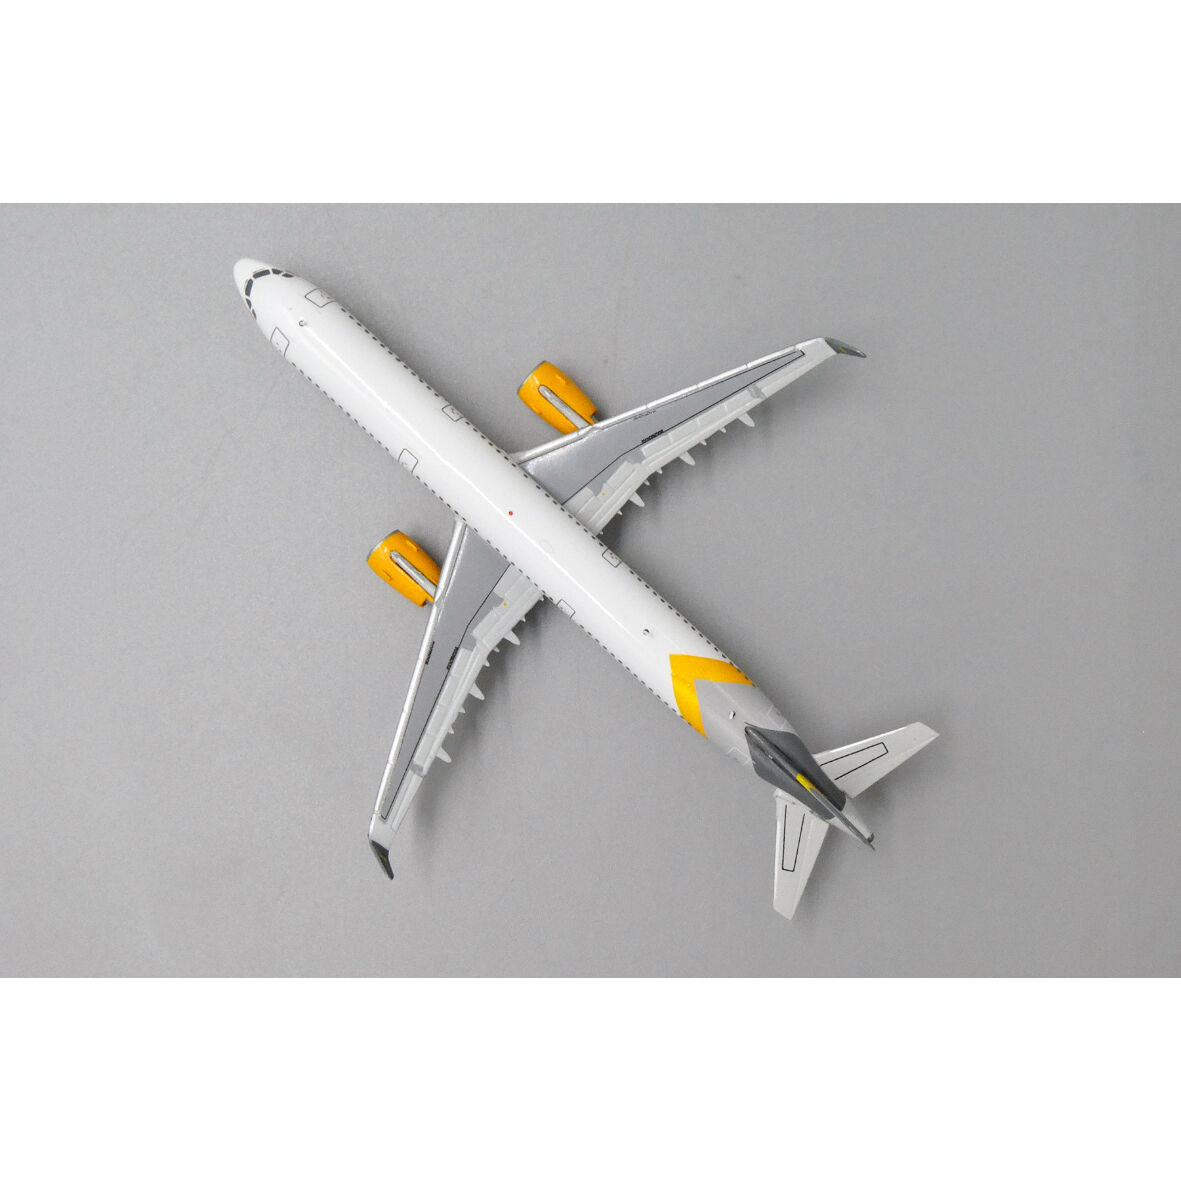 トランスアジア航空 A321 スケール1:100とVair 飛行機模型-